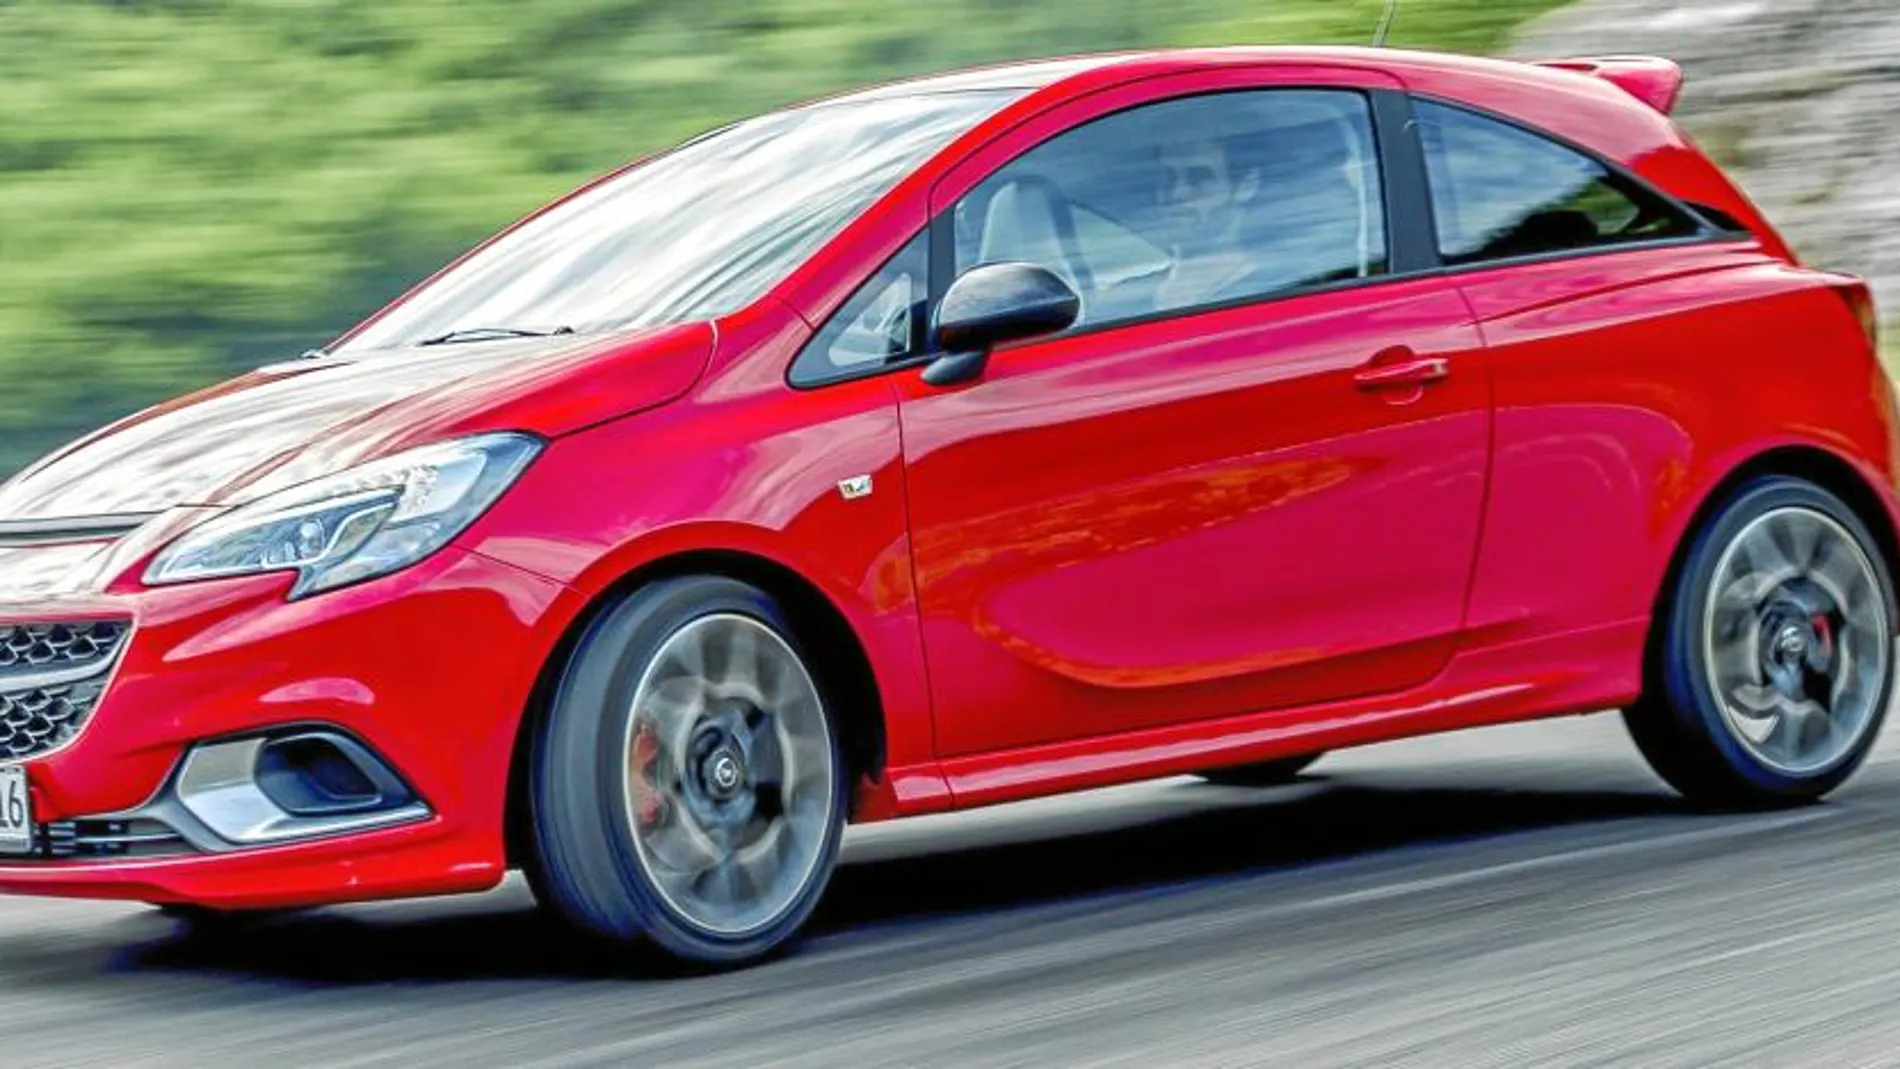 El motor turbo de 150 caballos es la esencia deportiva de la versión GSi del nuevo Opel Corsa